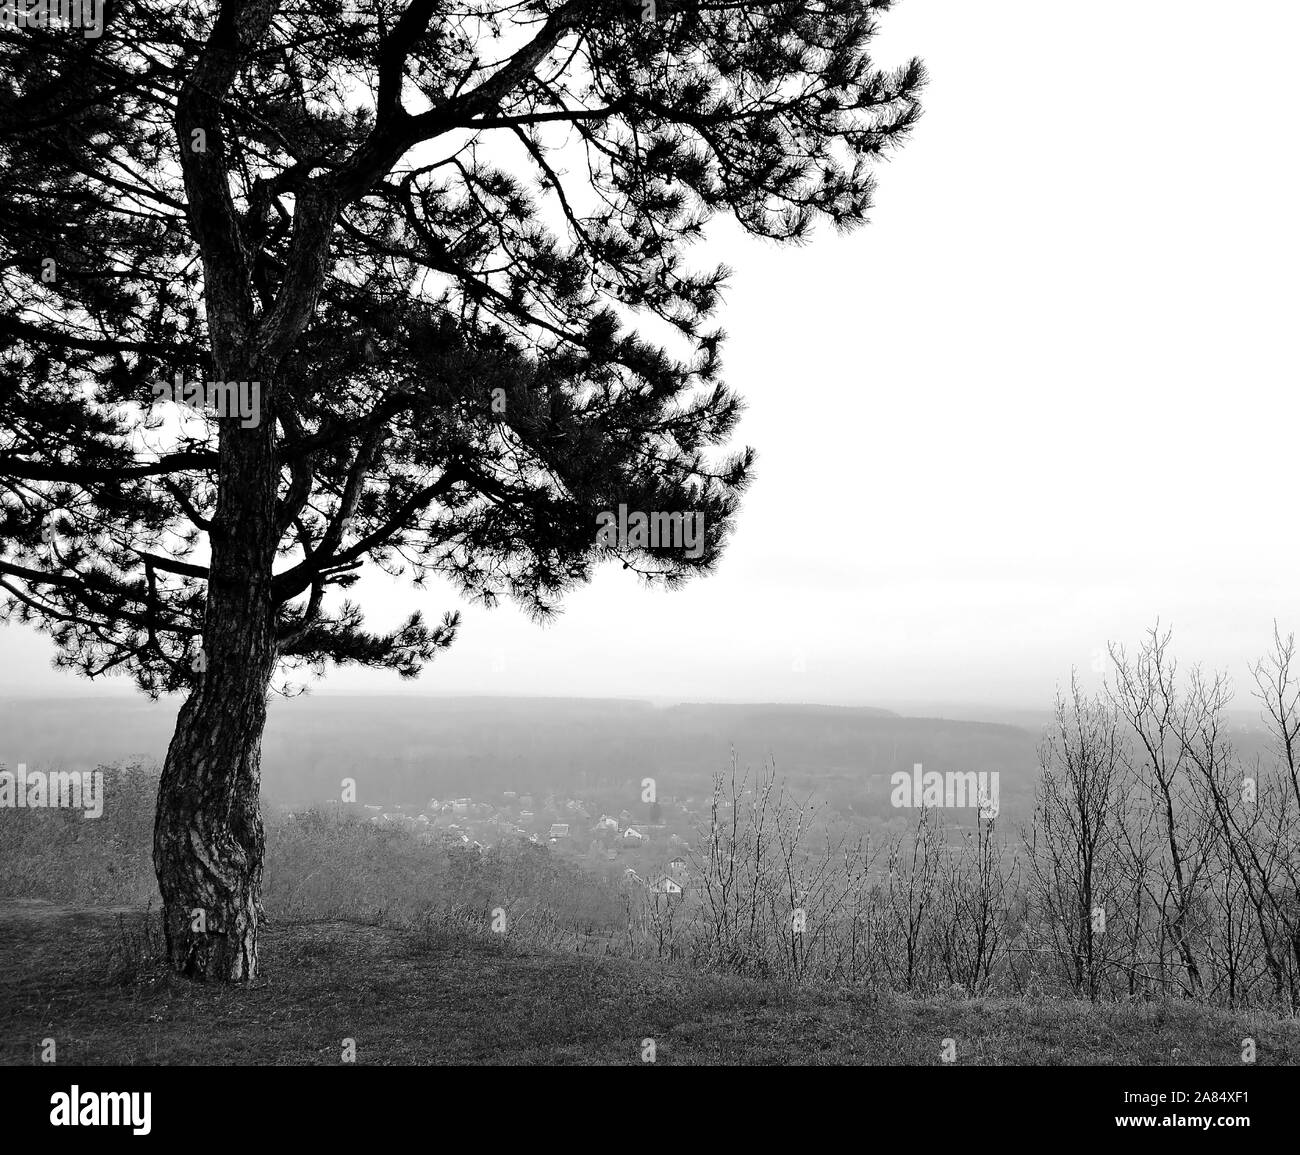 La photo montre un paysage d'automne monochrome avec un seul sur une colline de pins et d'un village dans le brouillard. Banque D'Images